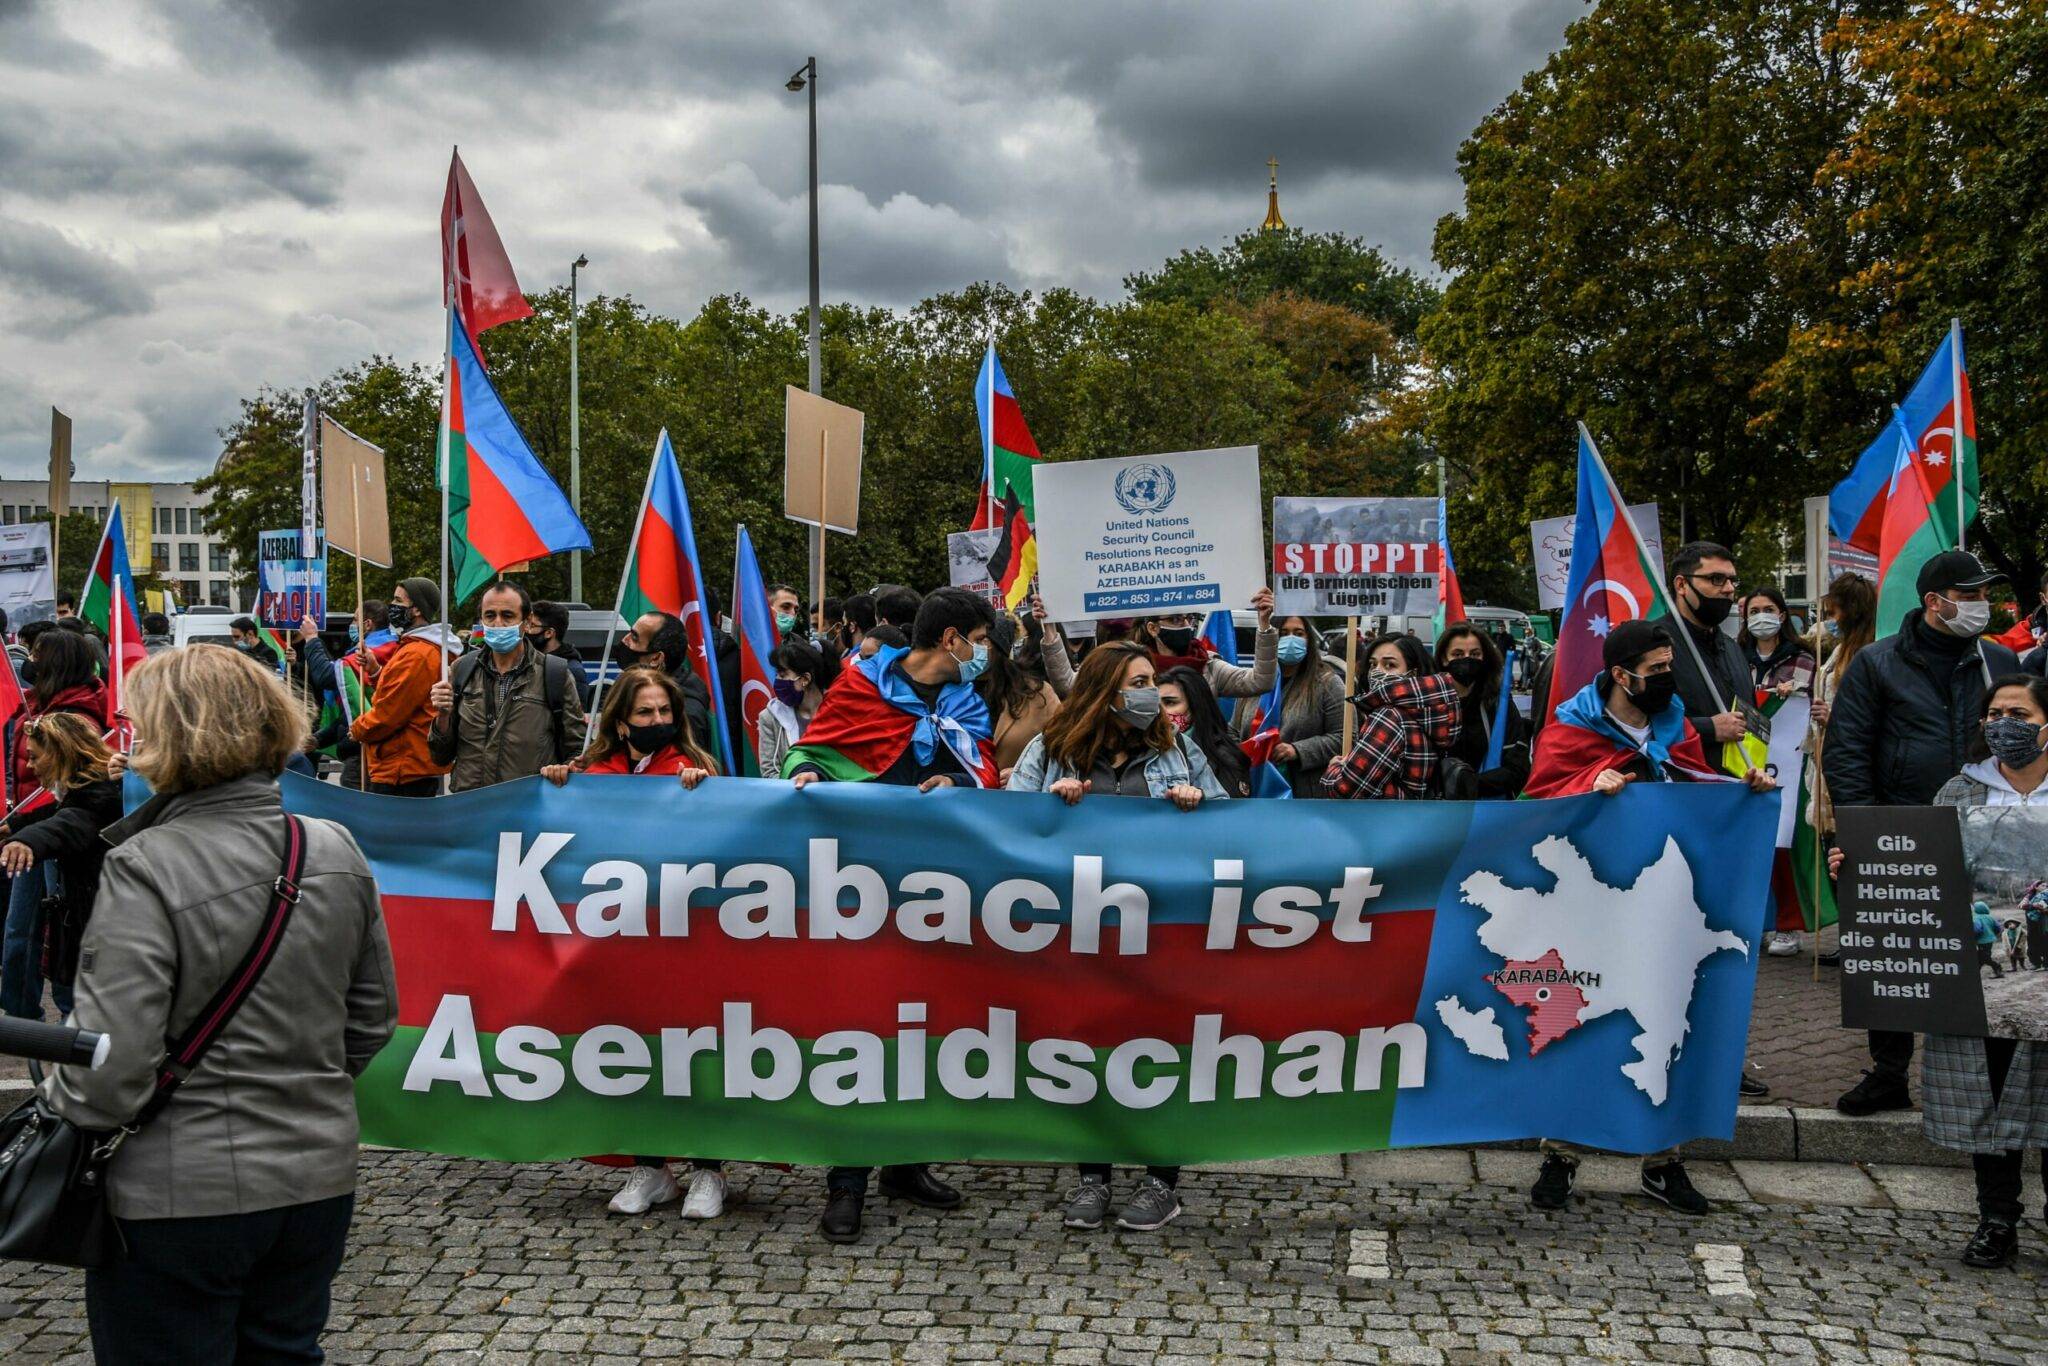 Konflikt zwischen Armenien und Aserbaidschan — Gefechte im Juli 2020